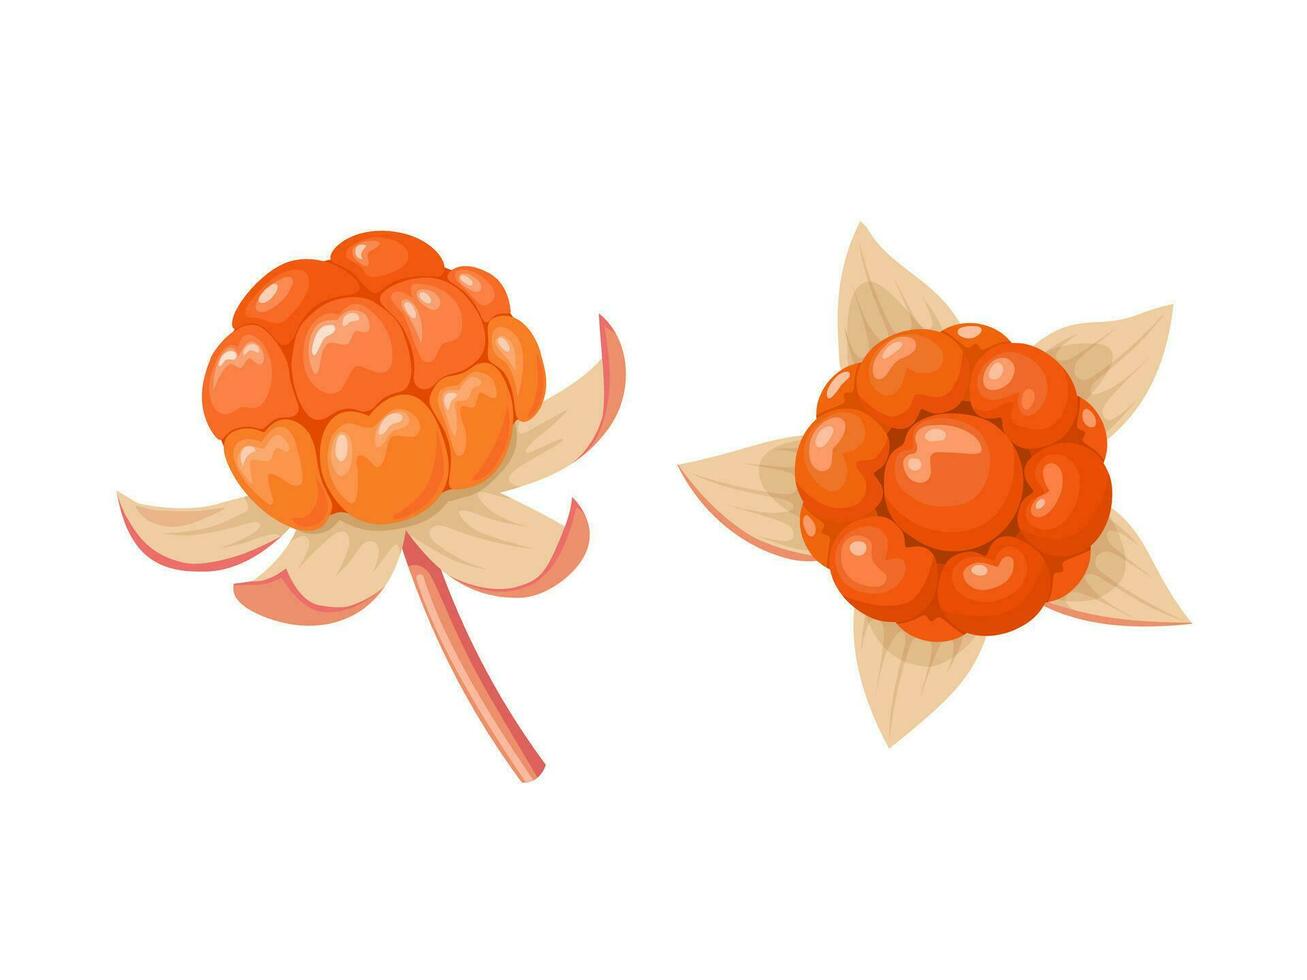 Vektor Illustration, Rubus Chamaemorus, bekannt wie Moltebeere, isoliert auf Weiß Hintergrund.